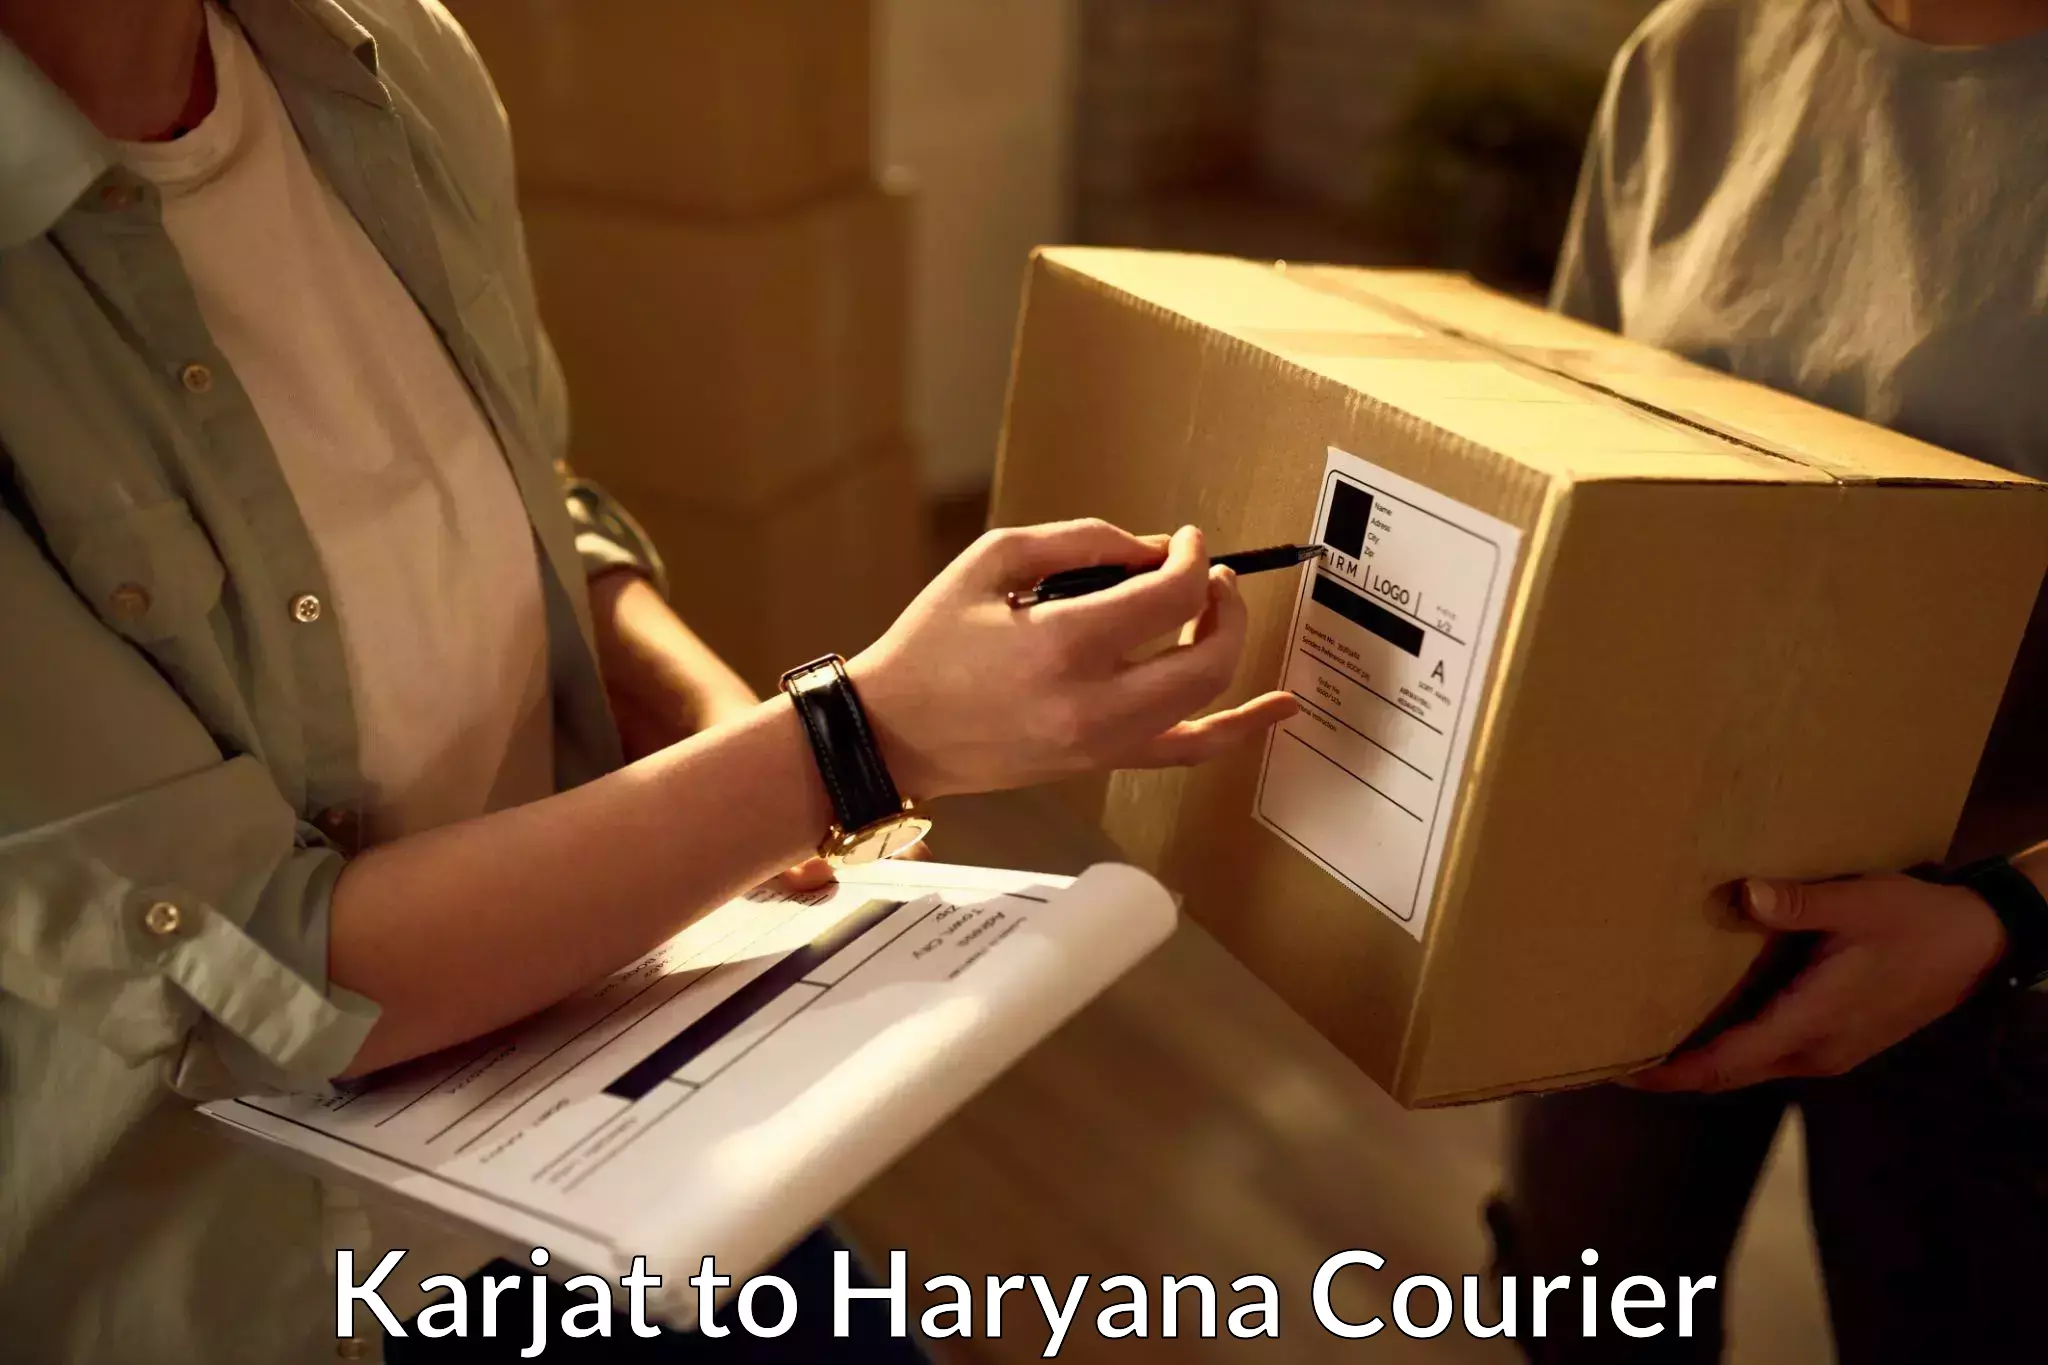 Online courier booking Karjat to Dharuhera